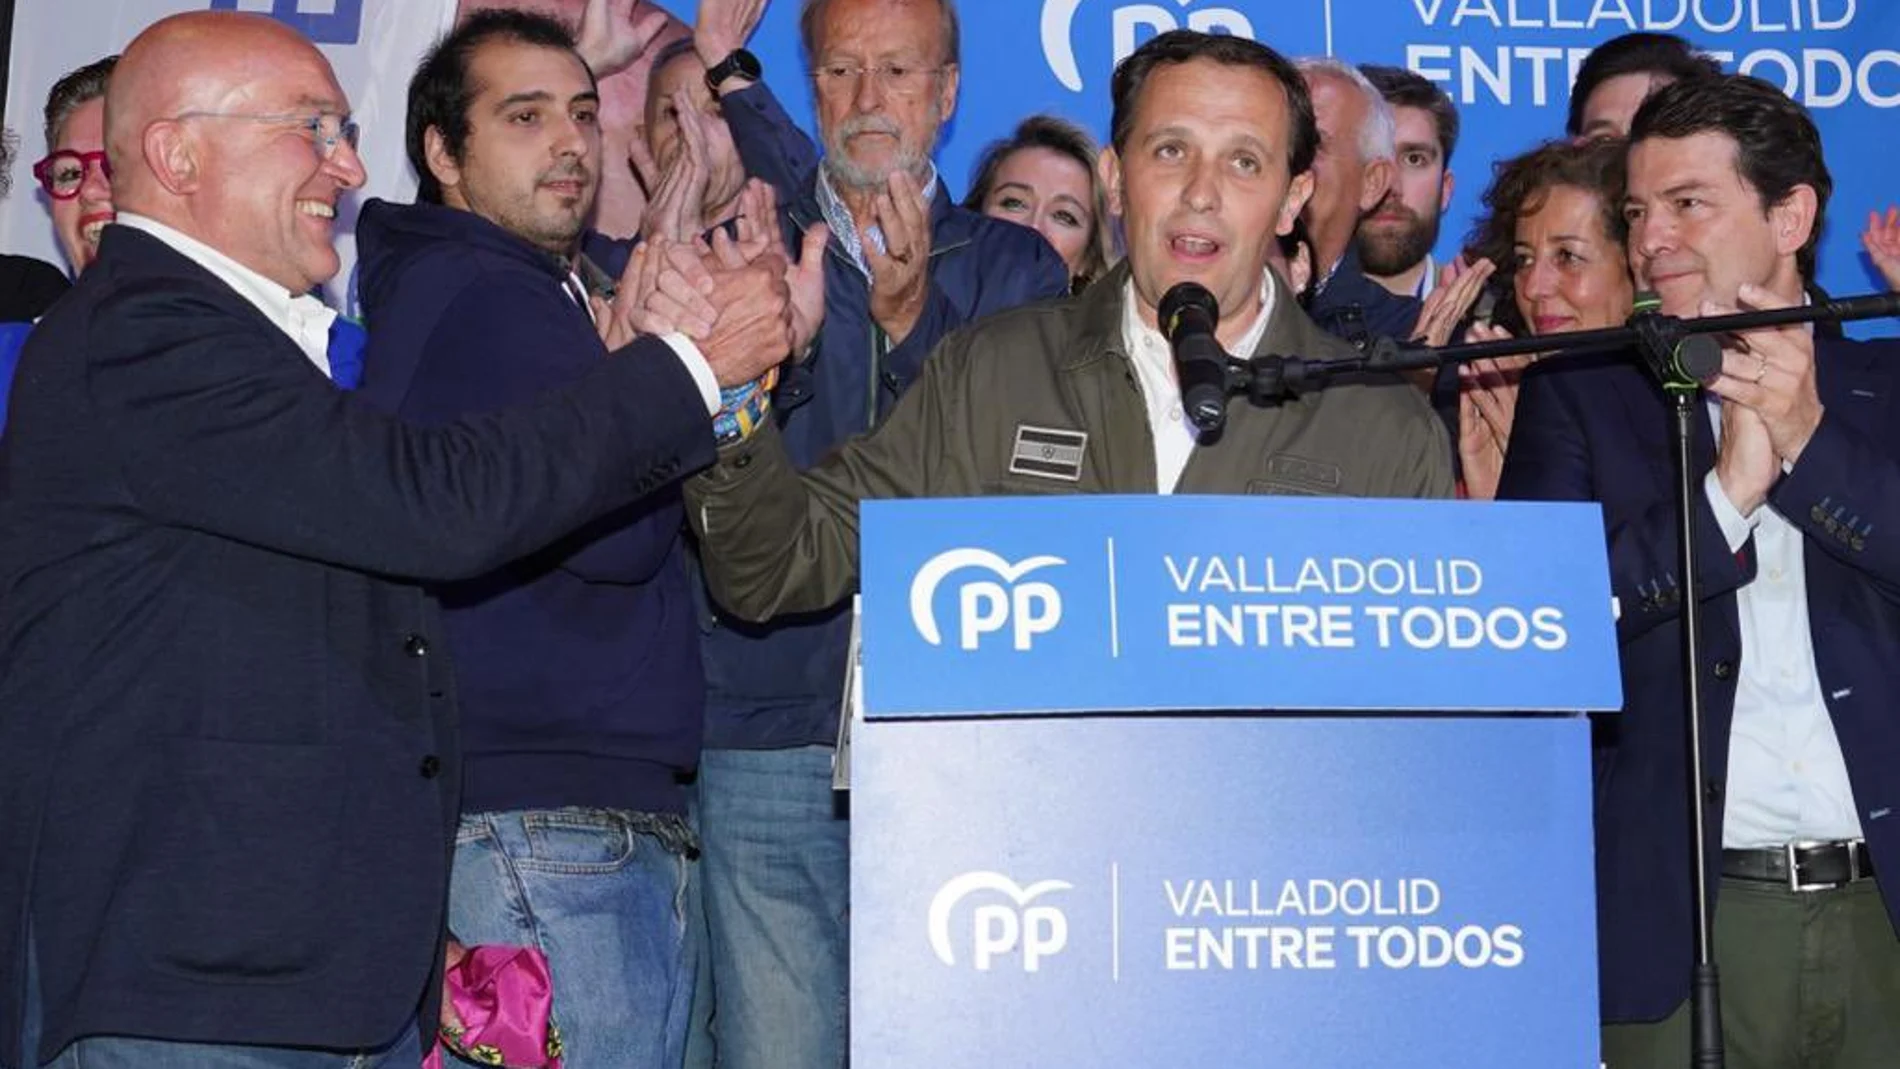 Conrado íscar seguirá presidiendo la Diputación de Valladolid tras el aplastante triunfo del PP en esta provincia